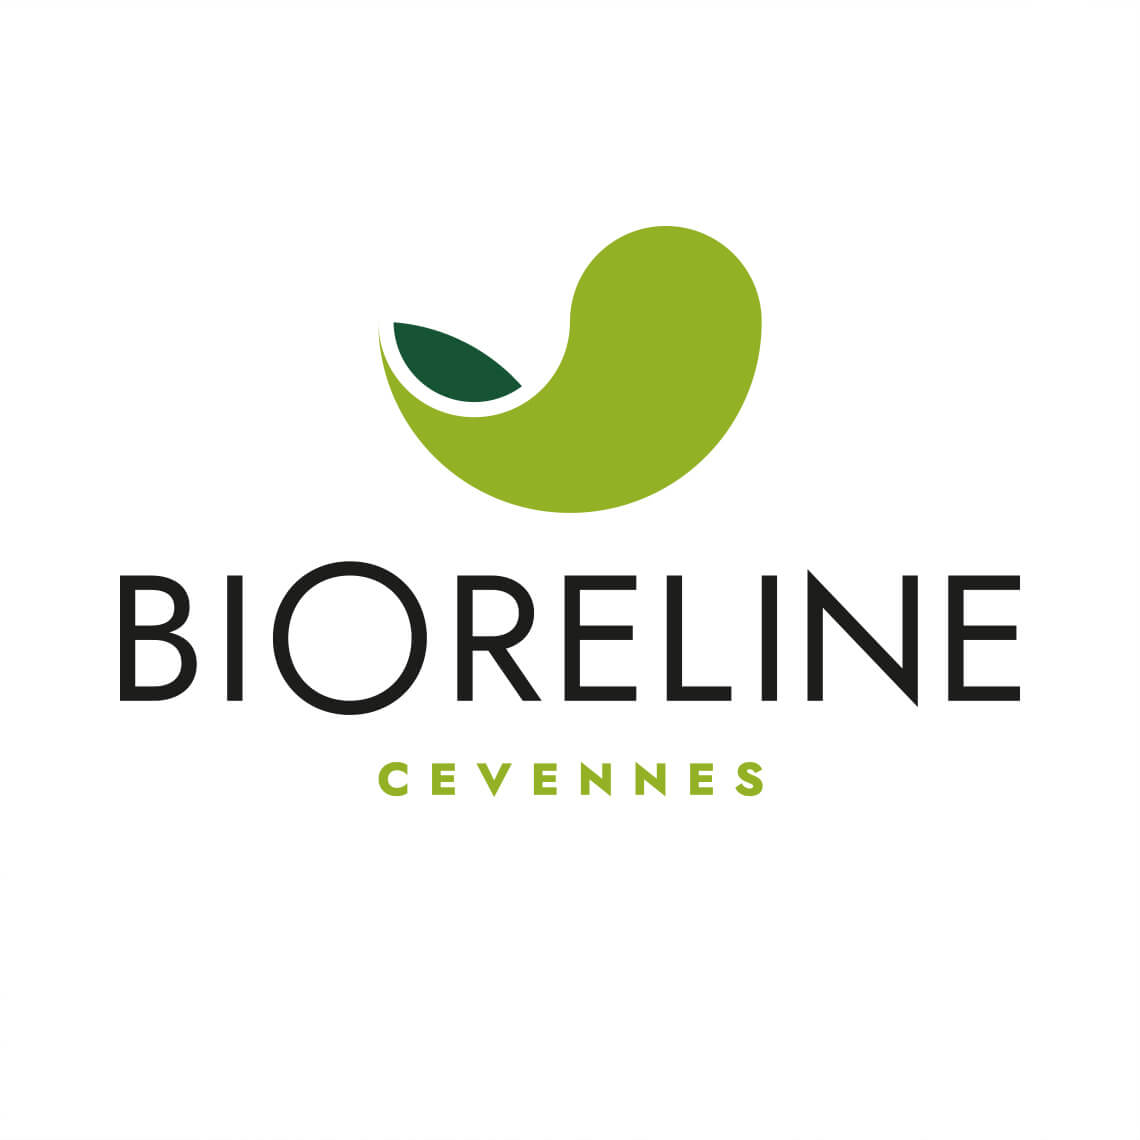 Création du nouveau logo Bioreline